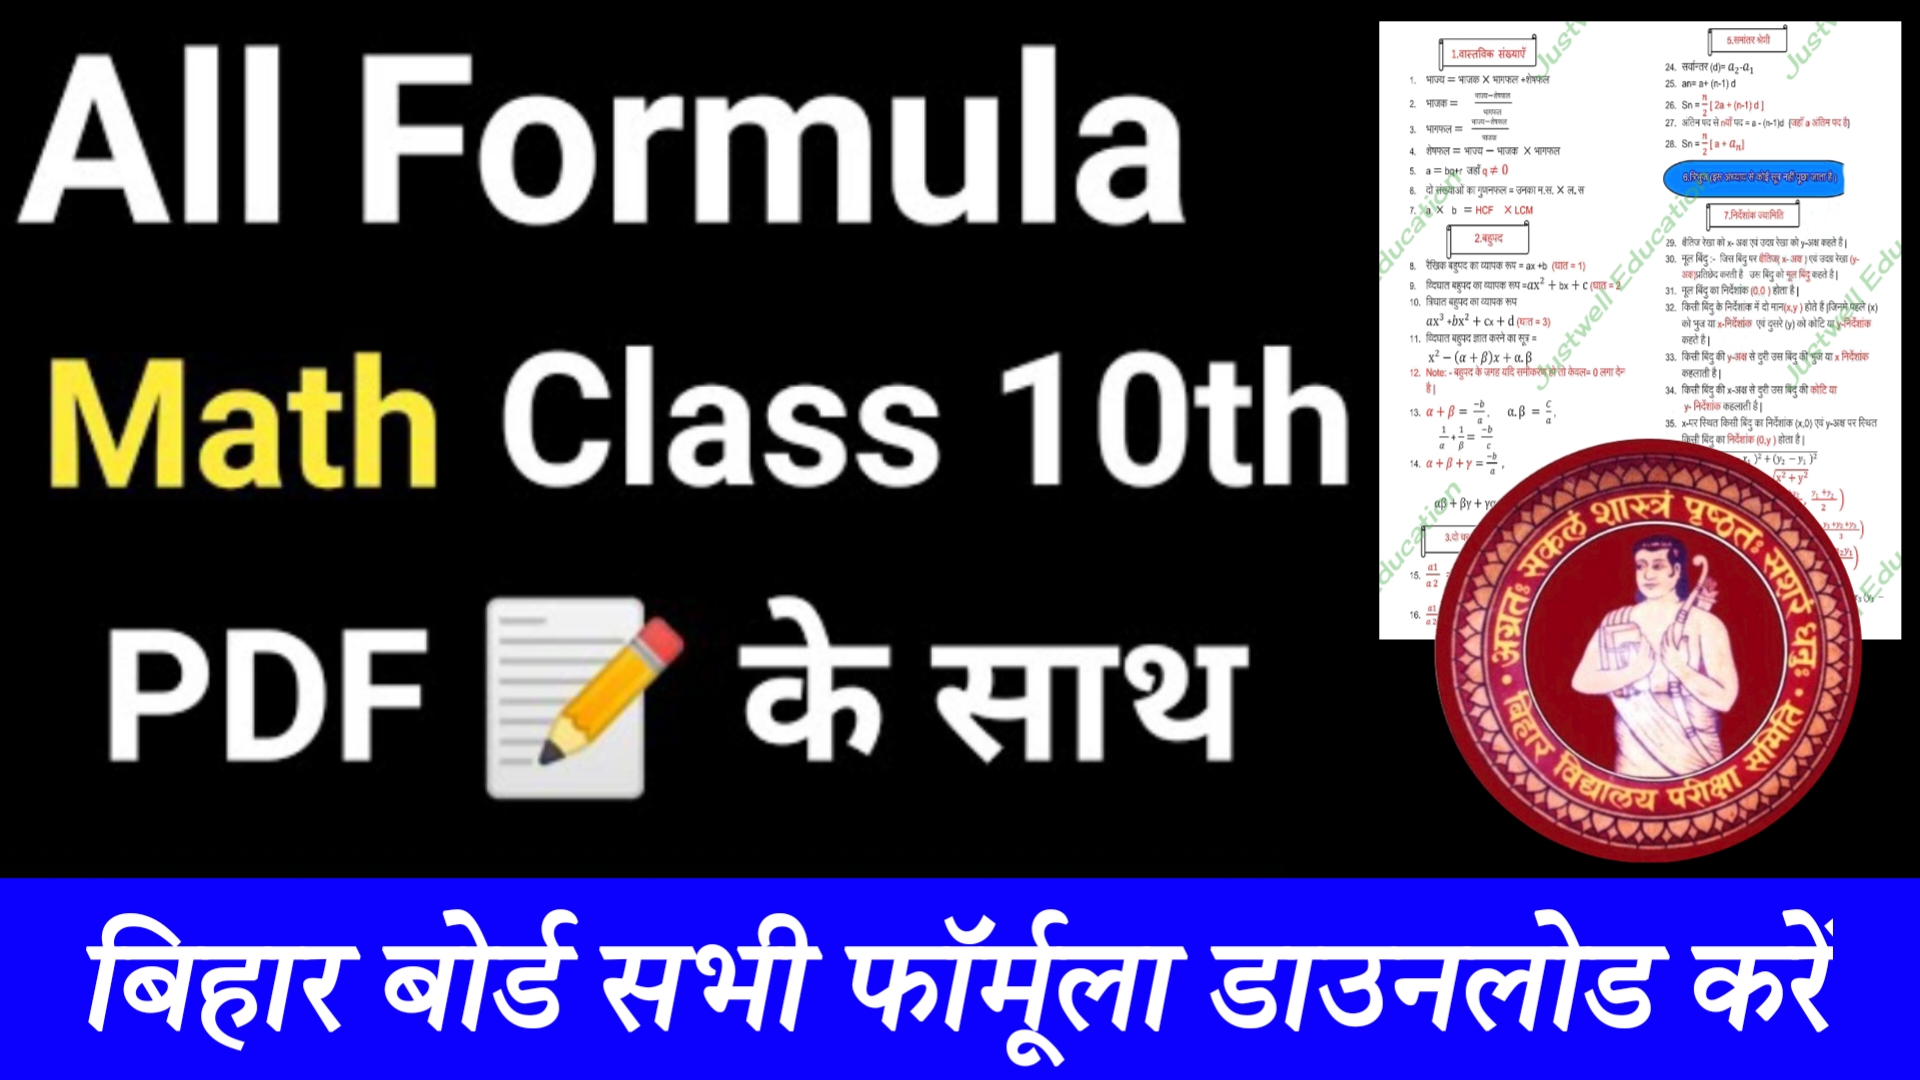 Bihar Board Class 10th Math All Formula